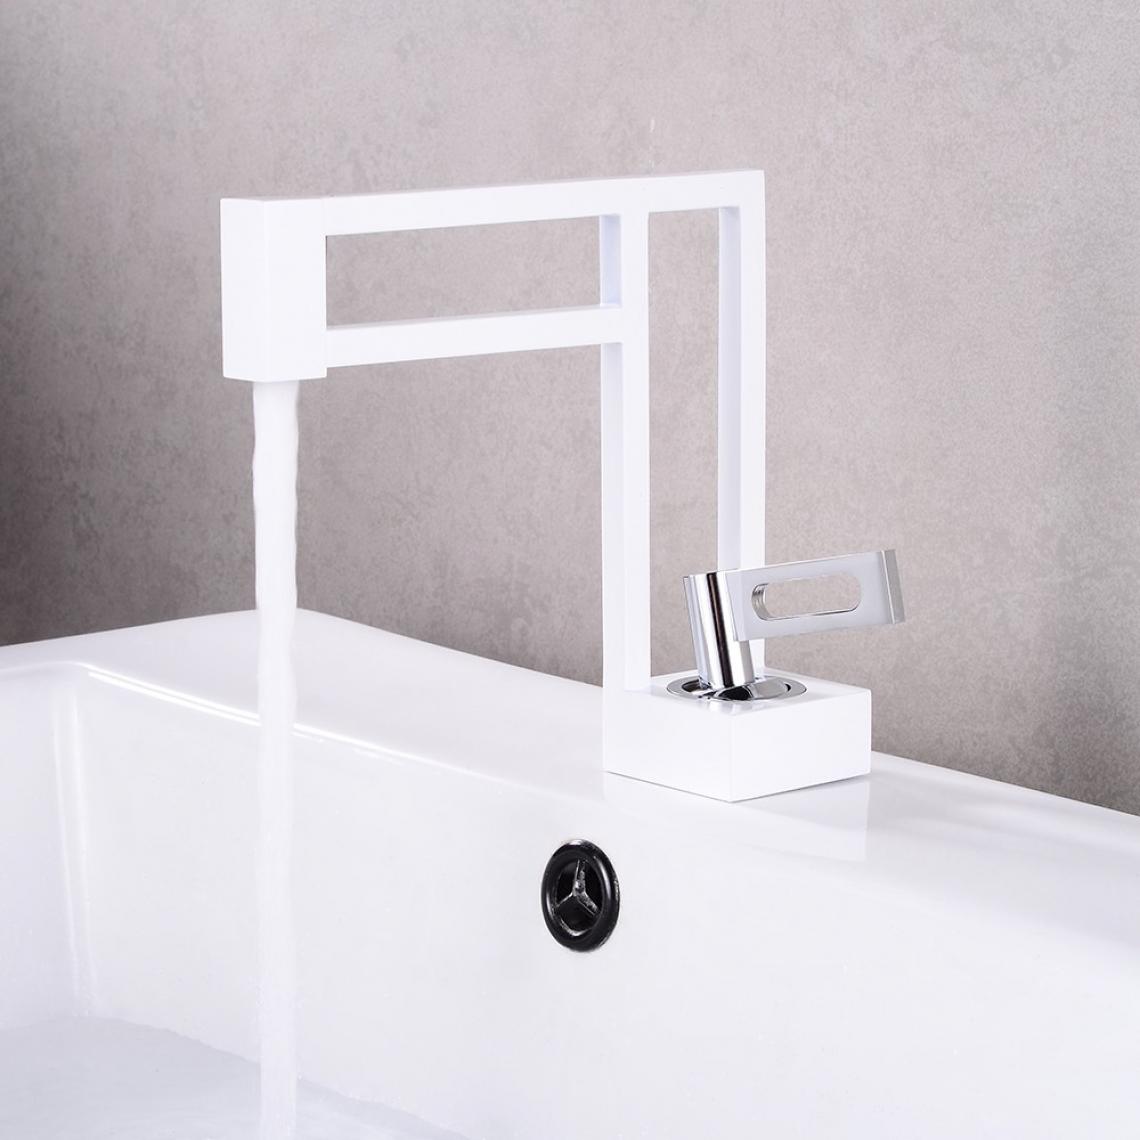 Kroos - Robinet lavabo salle de bain design en laiton - Blanc & chromé - Robinet de lavabo